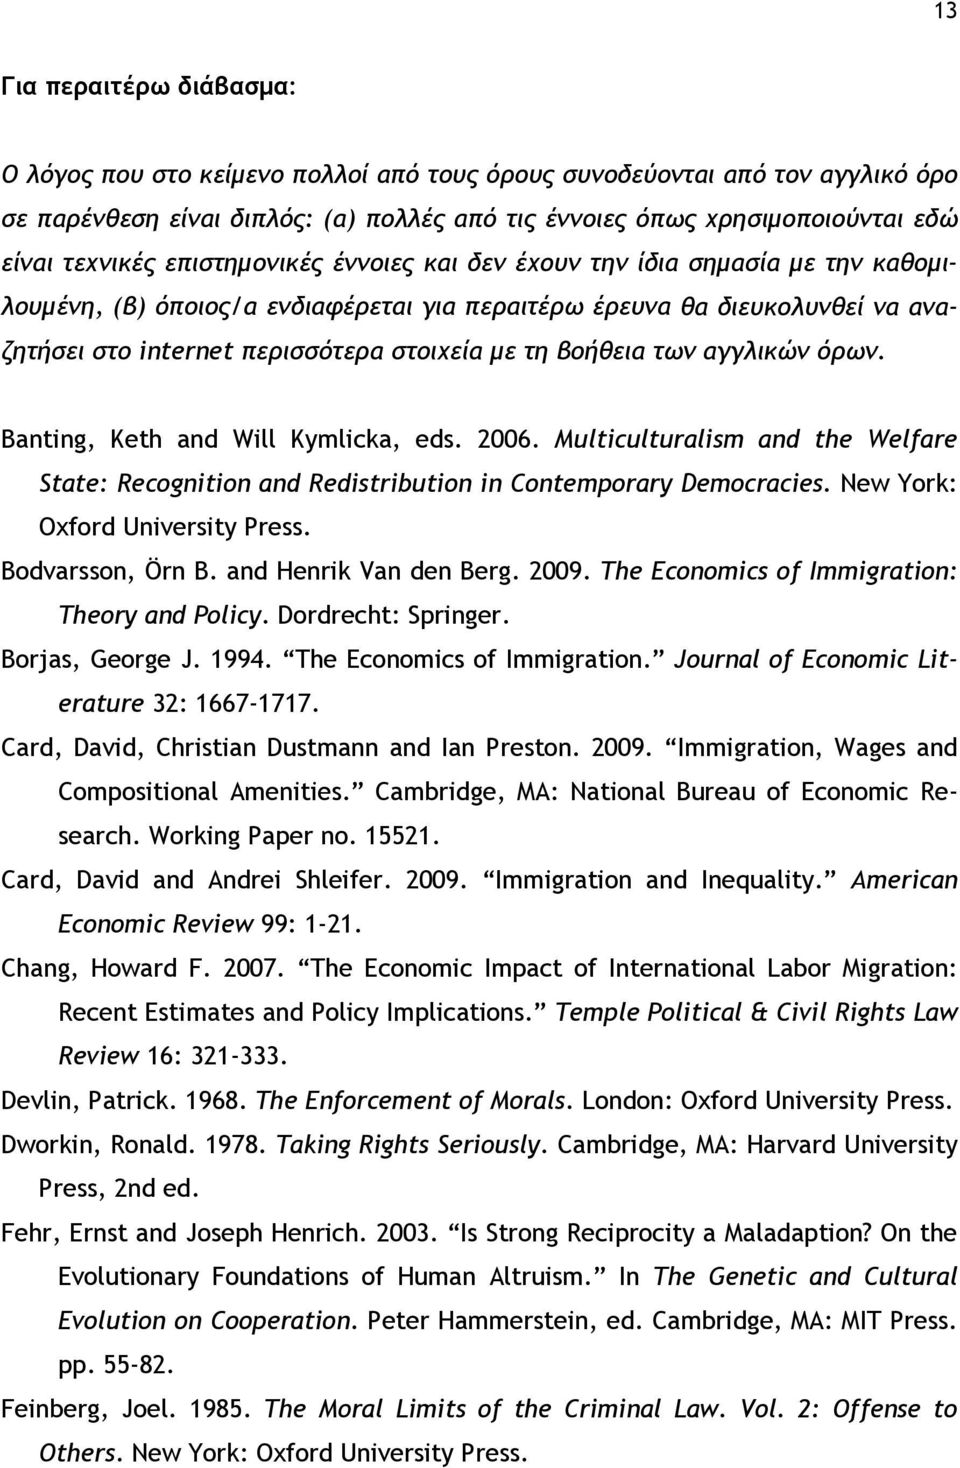 τη βοήθεια των αγγλικών όρων. Banting, Keth and Will Kymlicka, eds. 2006. Multiculturalism and the Welfare State: Recognition and Redistribution in Contemporary Democracies.